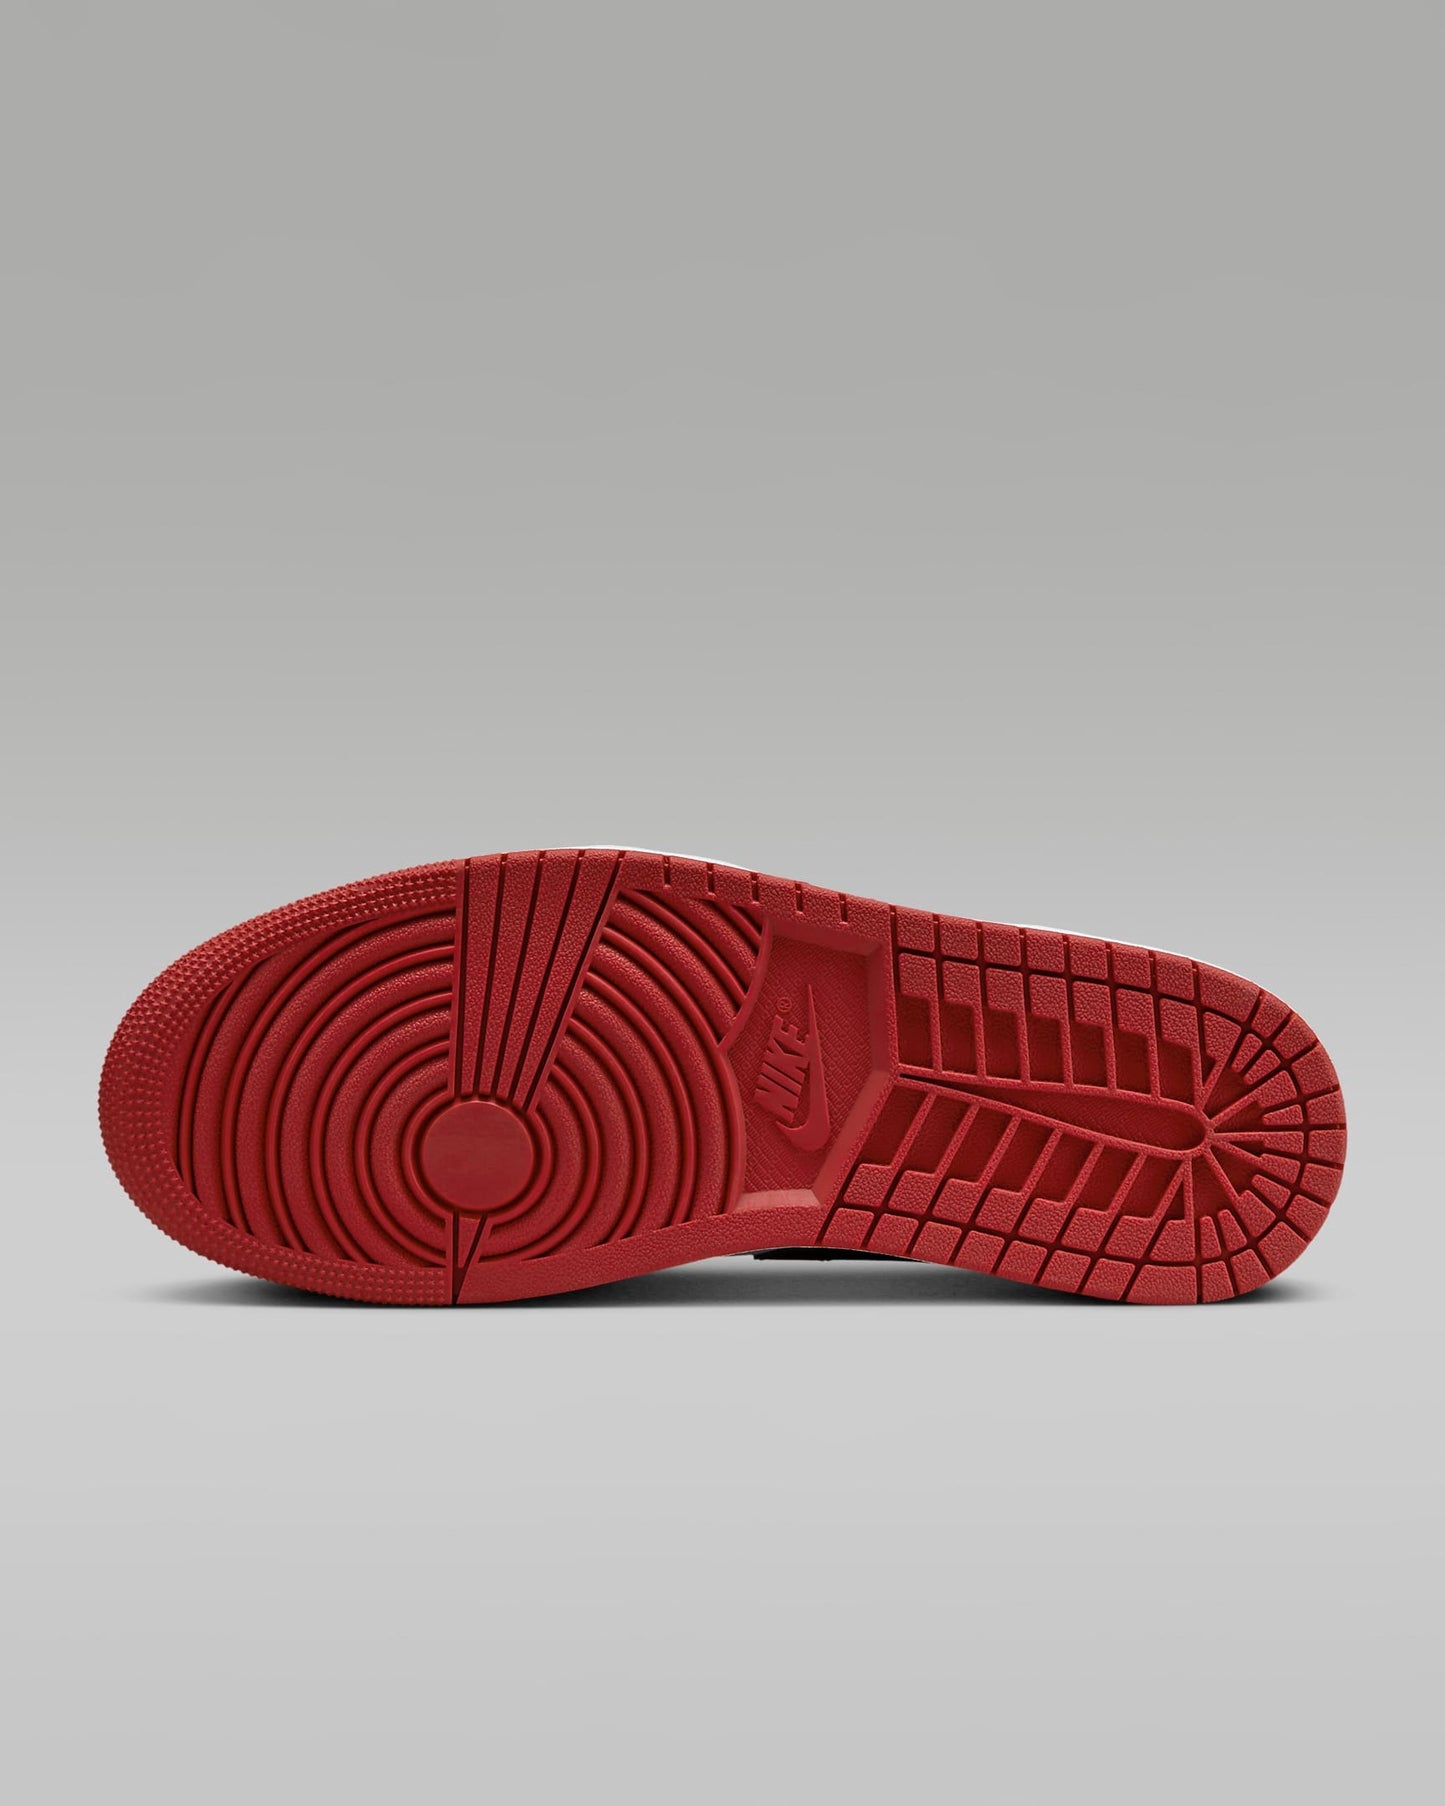 Nike - Air Jordan 1 Low - Bred Toe